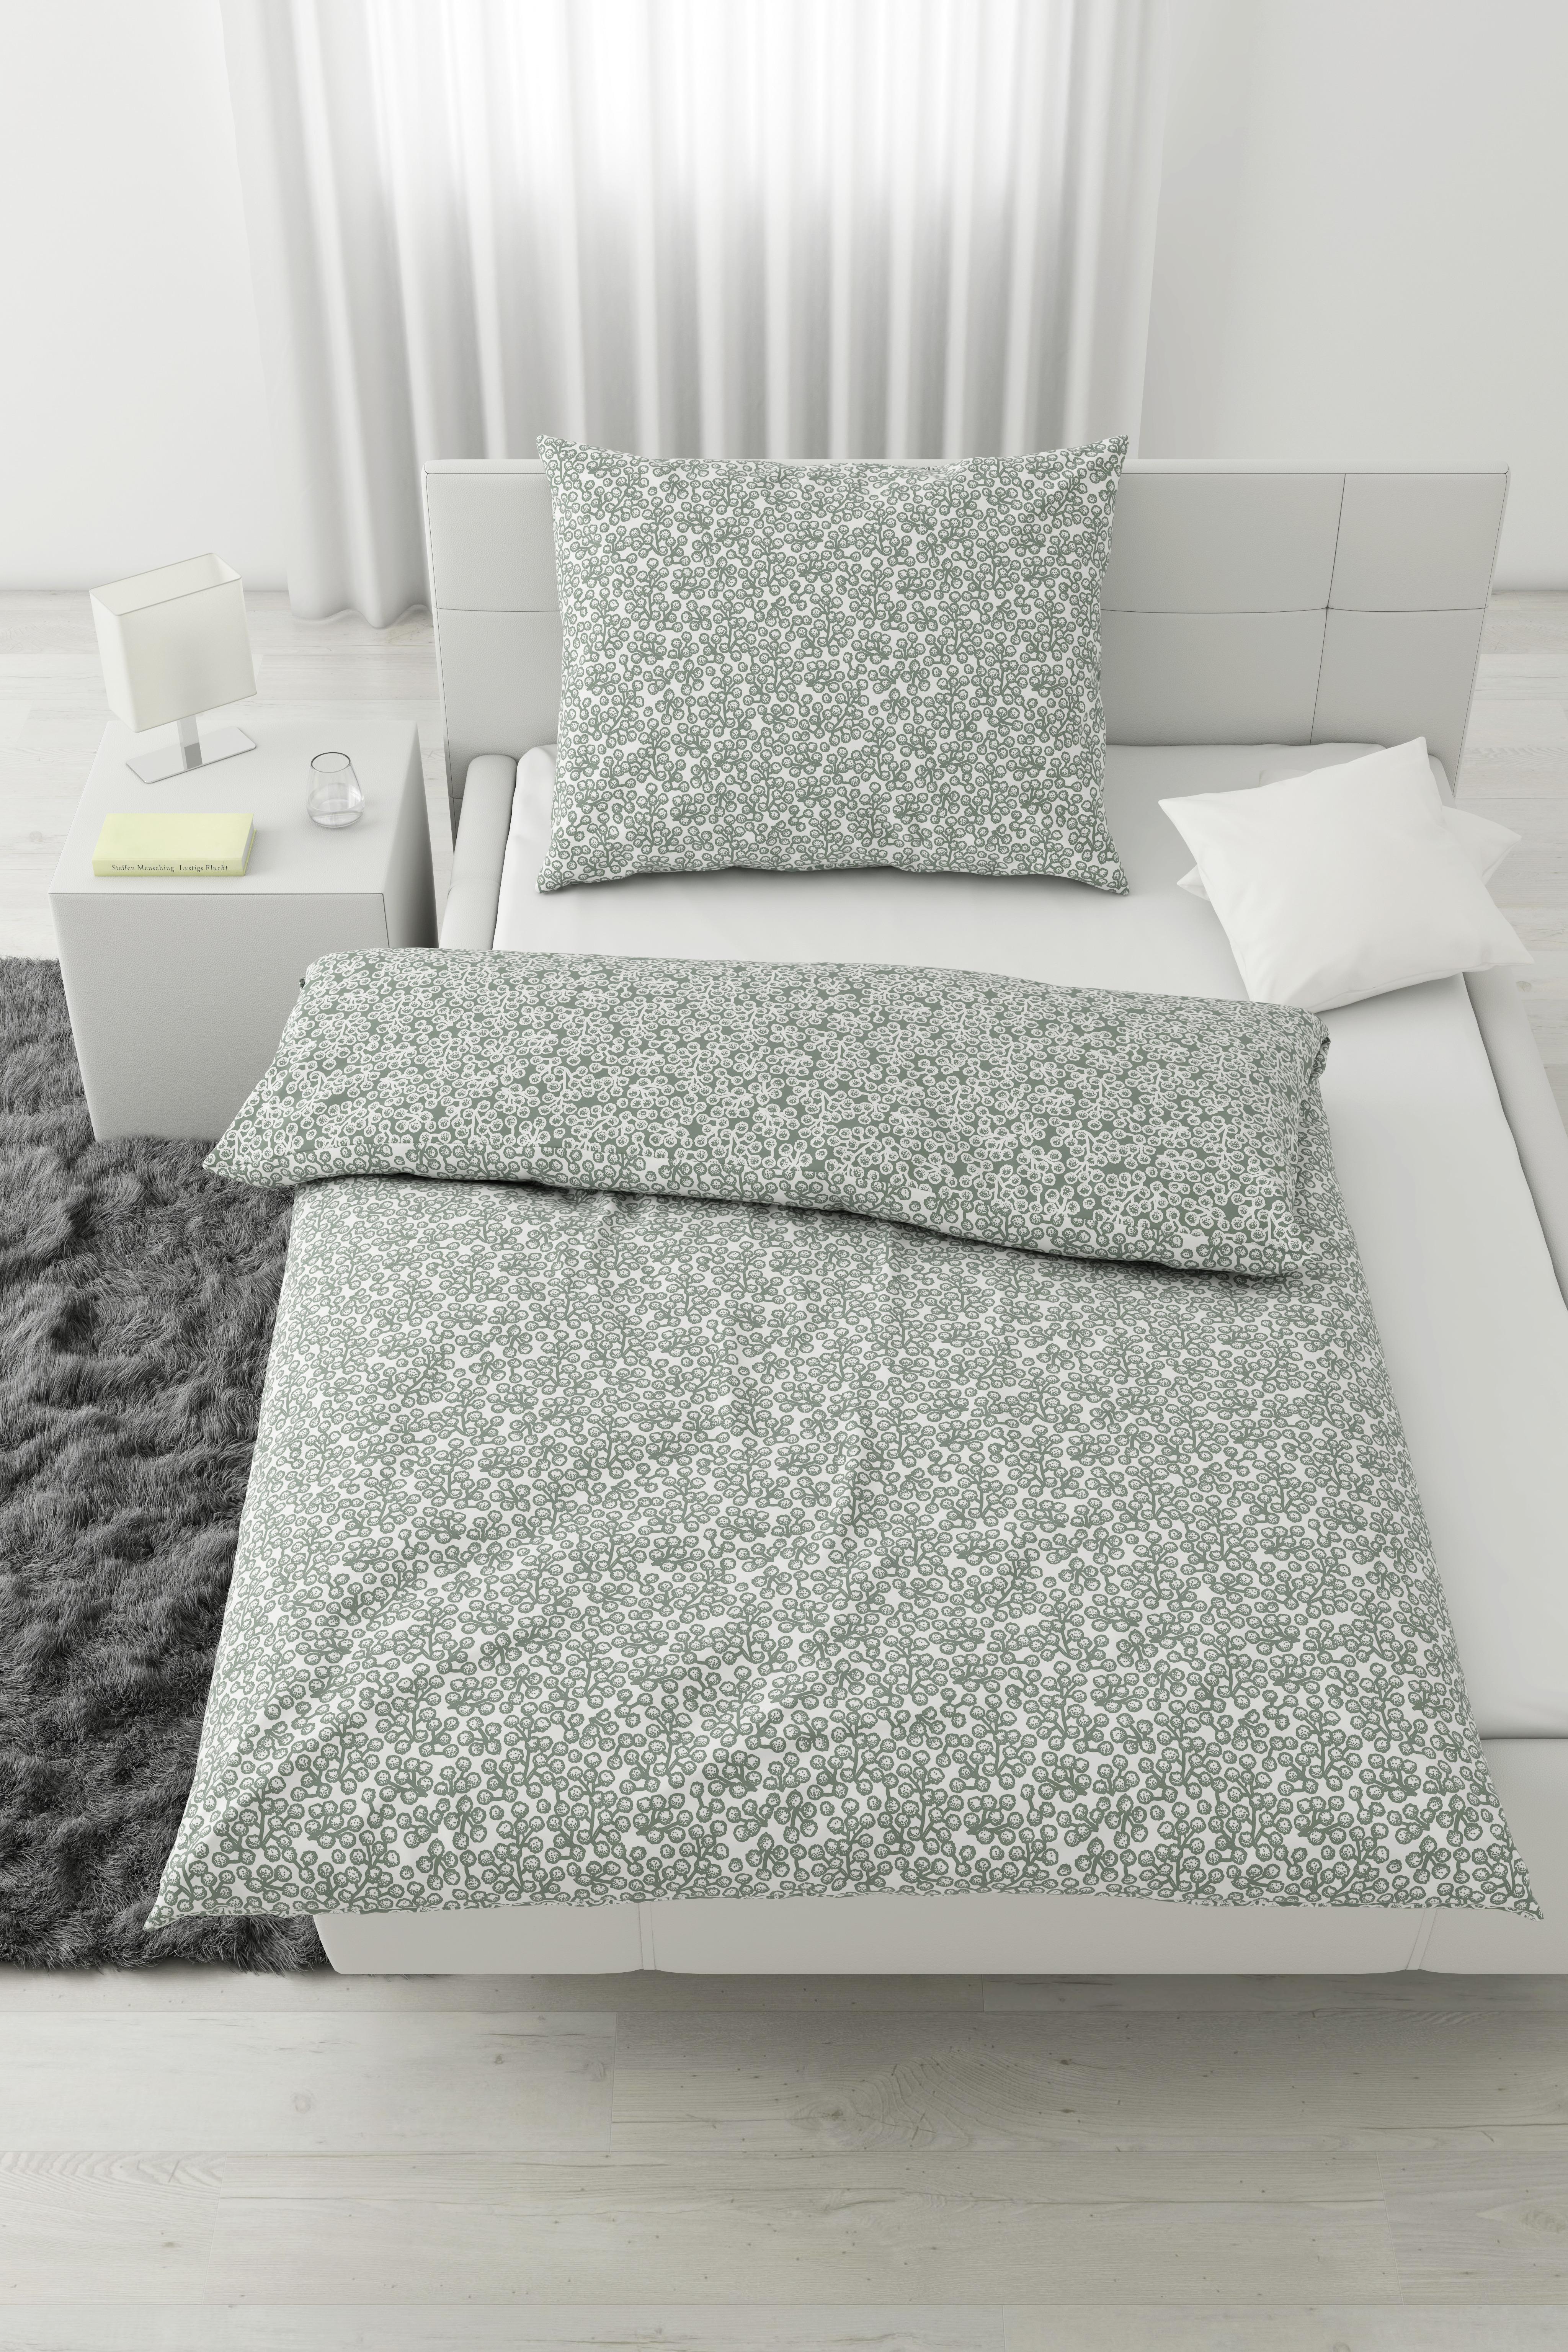 Lenjerie de pat Lemp - verde, Konventionell, textil (140/200cm) - Modern Living